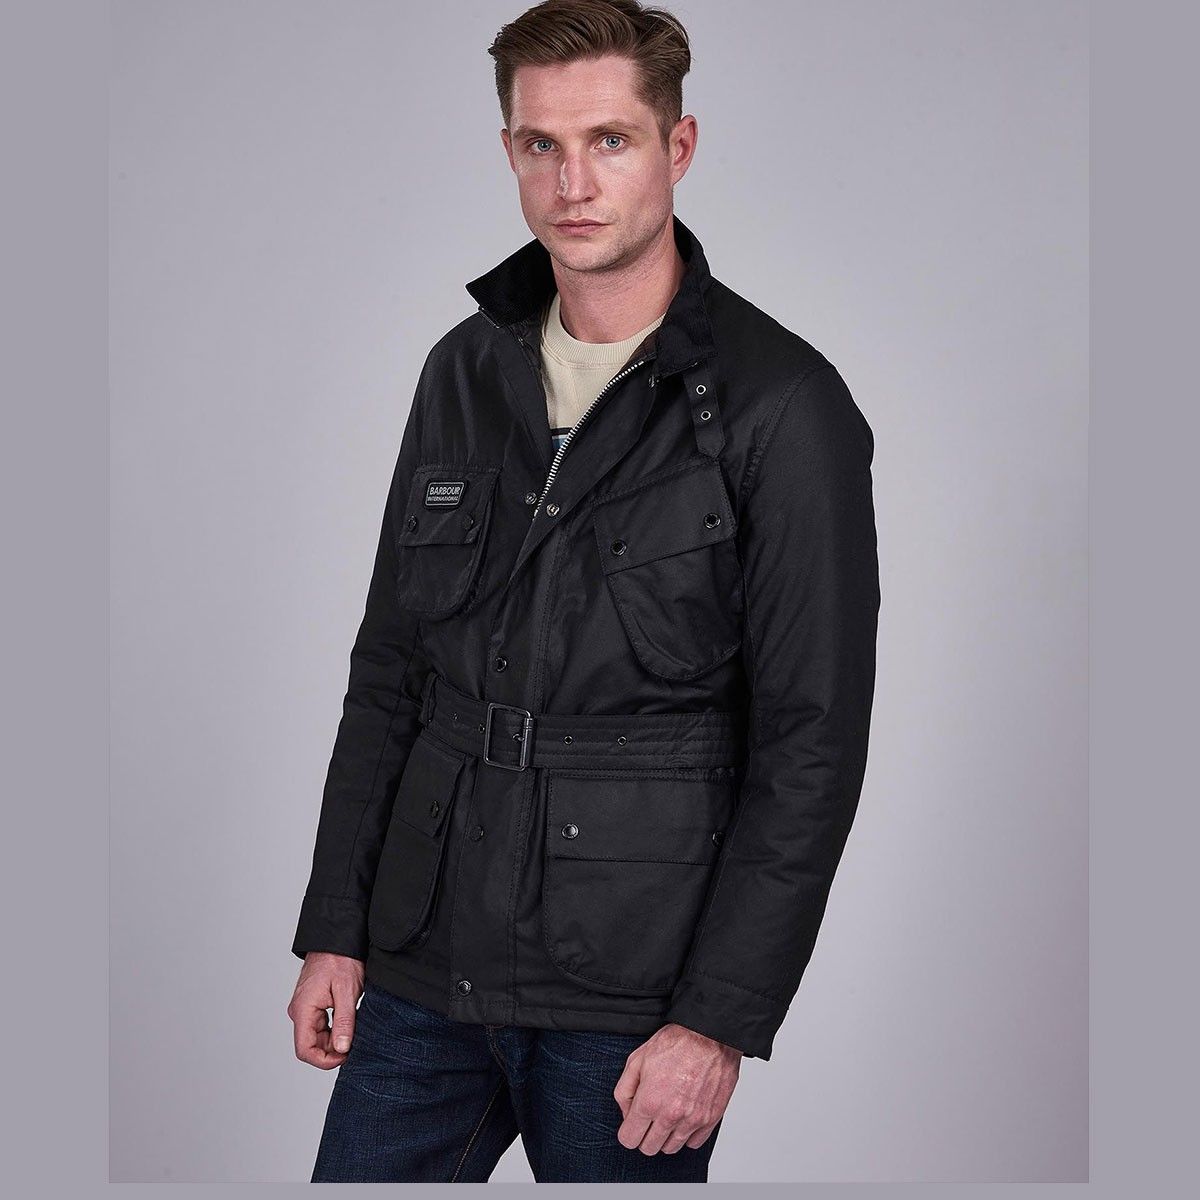 Ανδρικό μπουφάν καπιτονέ International waxed jacket - Barbout - Antoniadis  Stores